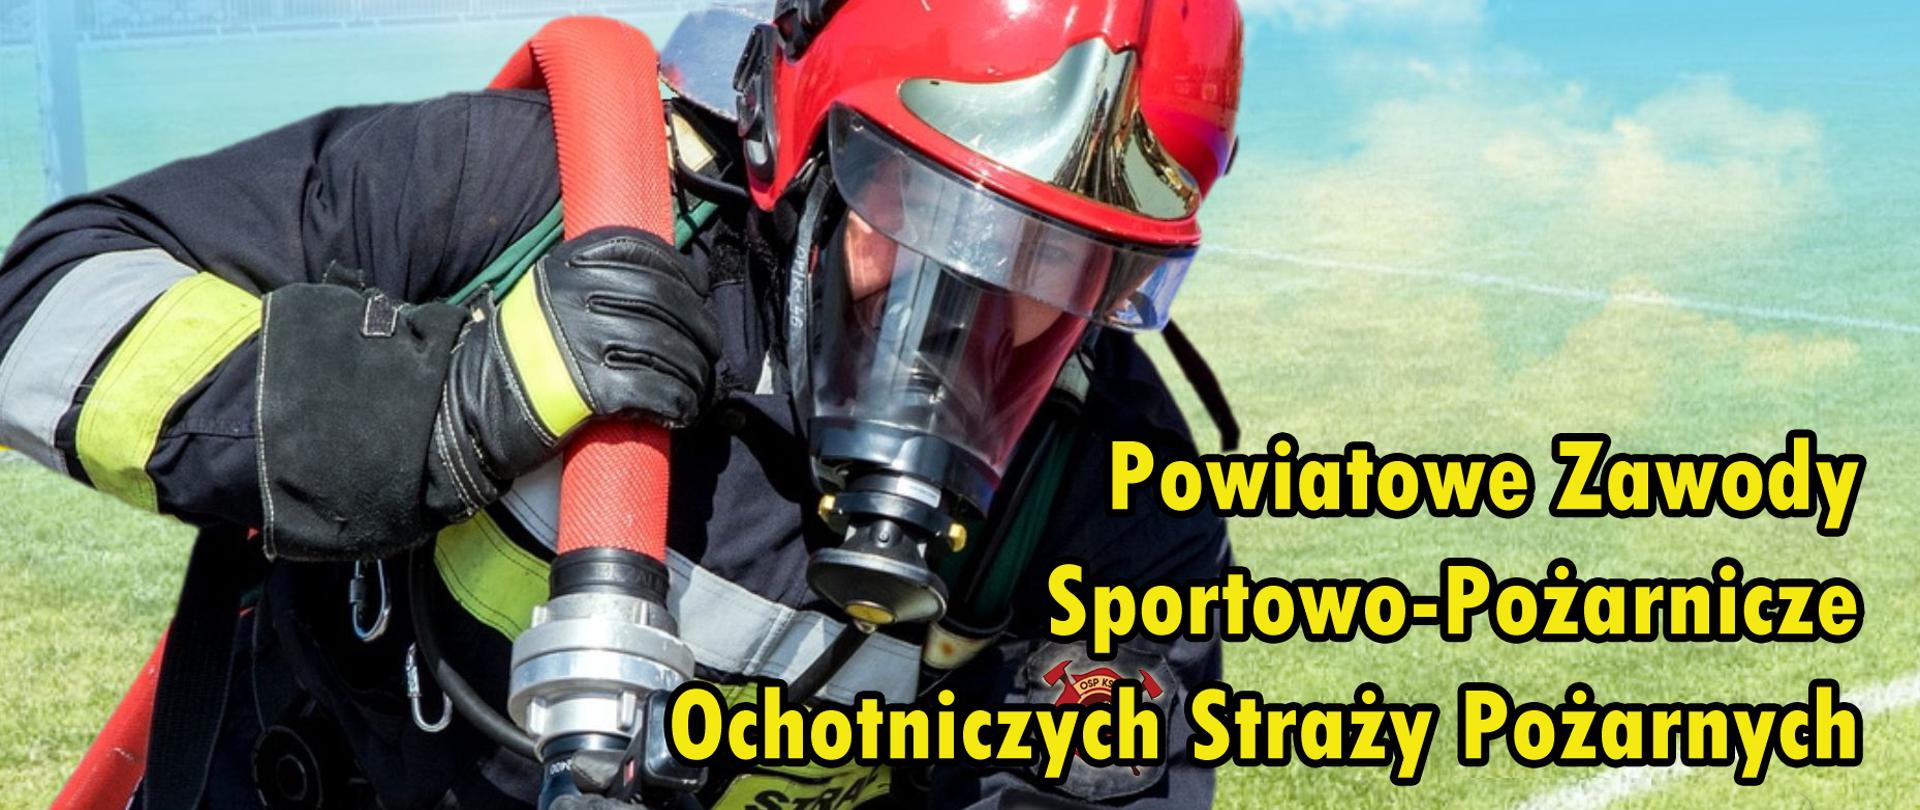 Zaproszenie na Powiatowe Zawody Sportowo-Pożarnicze Ochotniczych Straży Pożarnych